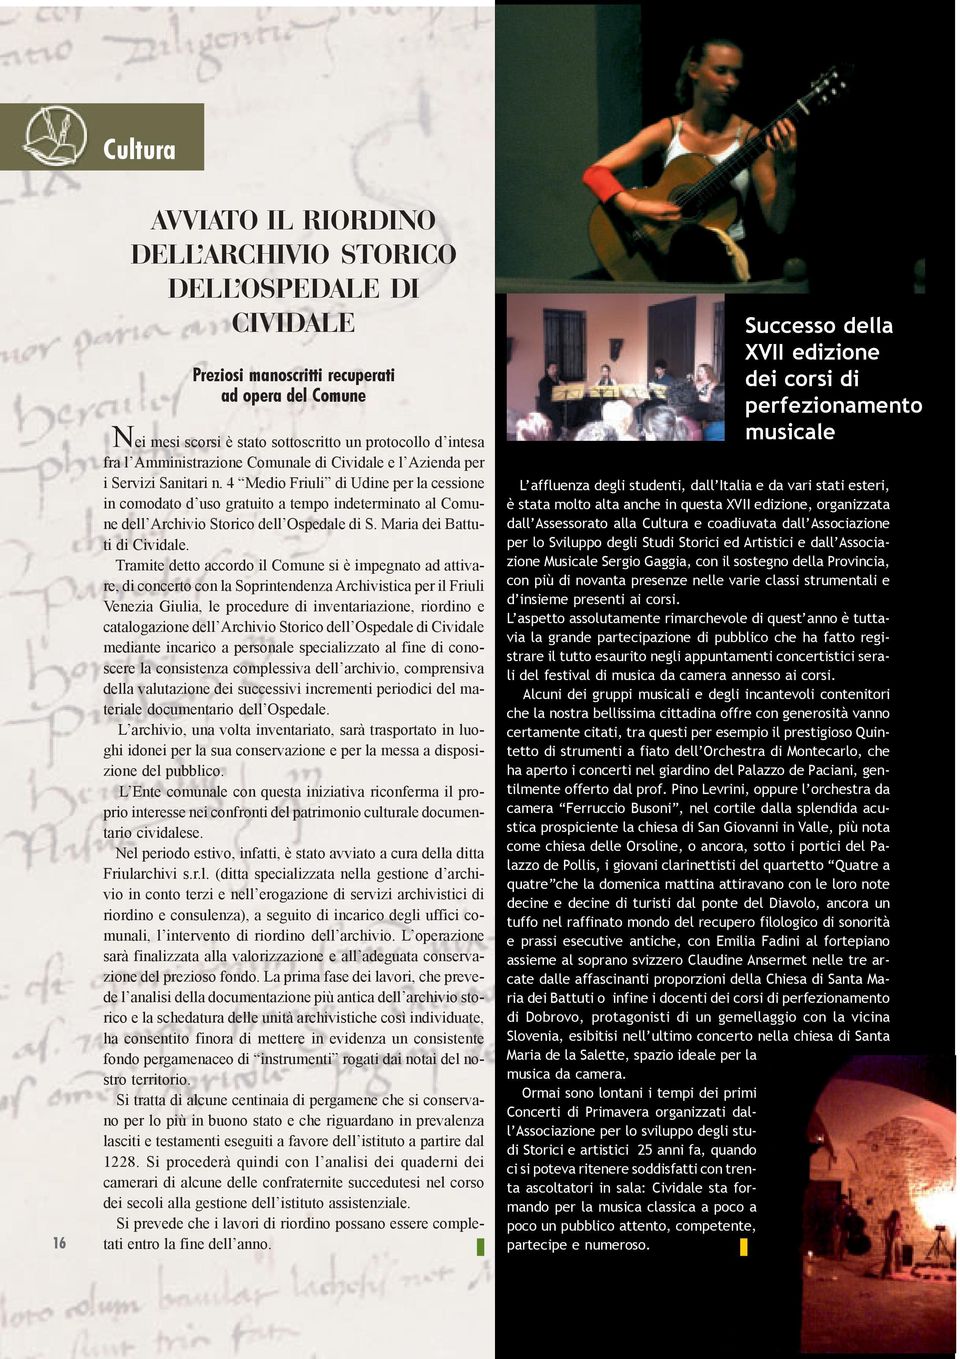 4 Medio Friuli di Udine per la cessione in comodato d uso gratuito a tempo indeterminato al Comune dell Archivio Storico dell Ospedale di S. Maria dei Battuti di Cividale.